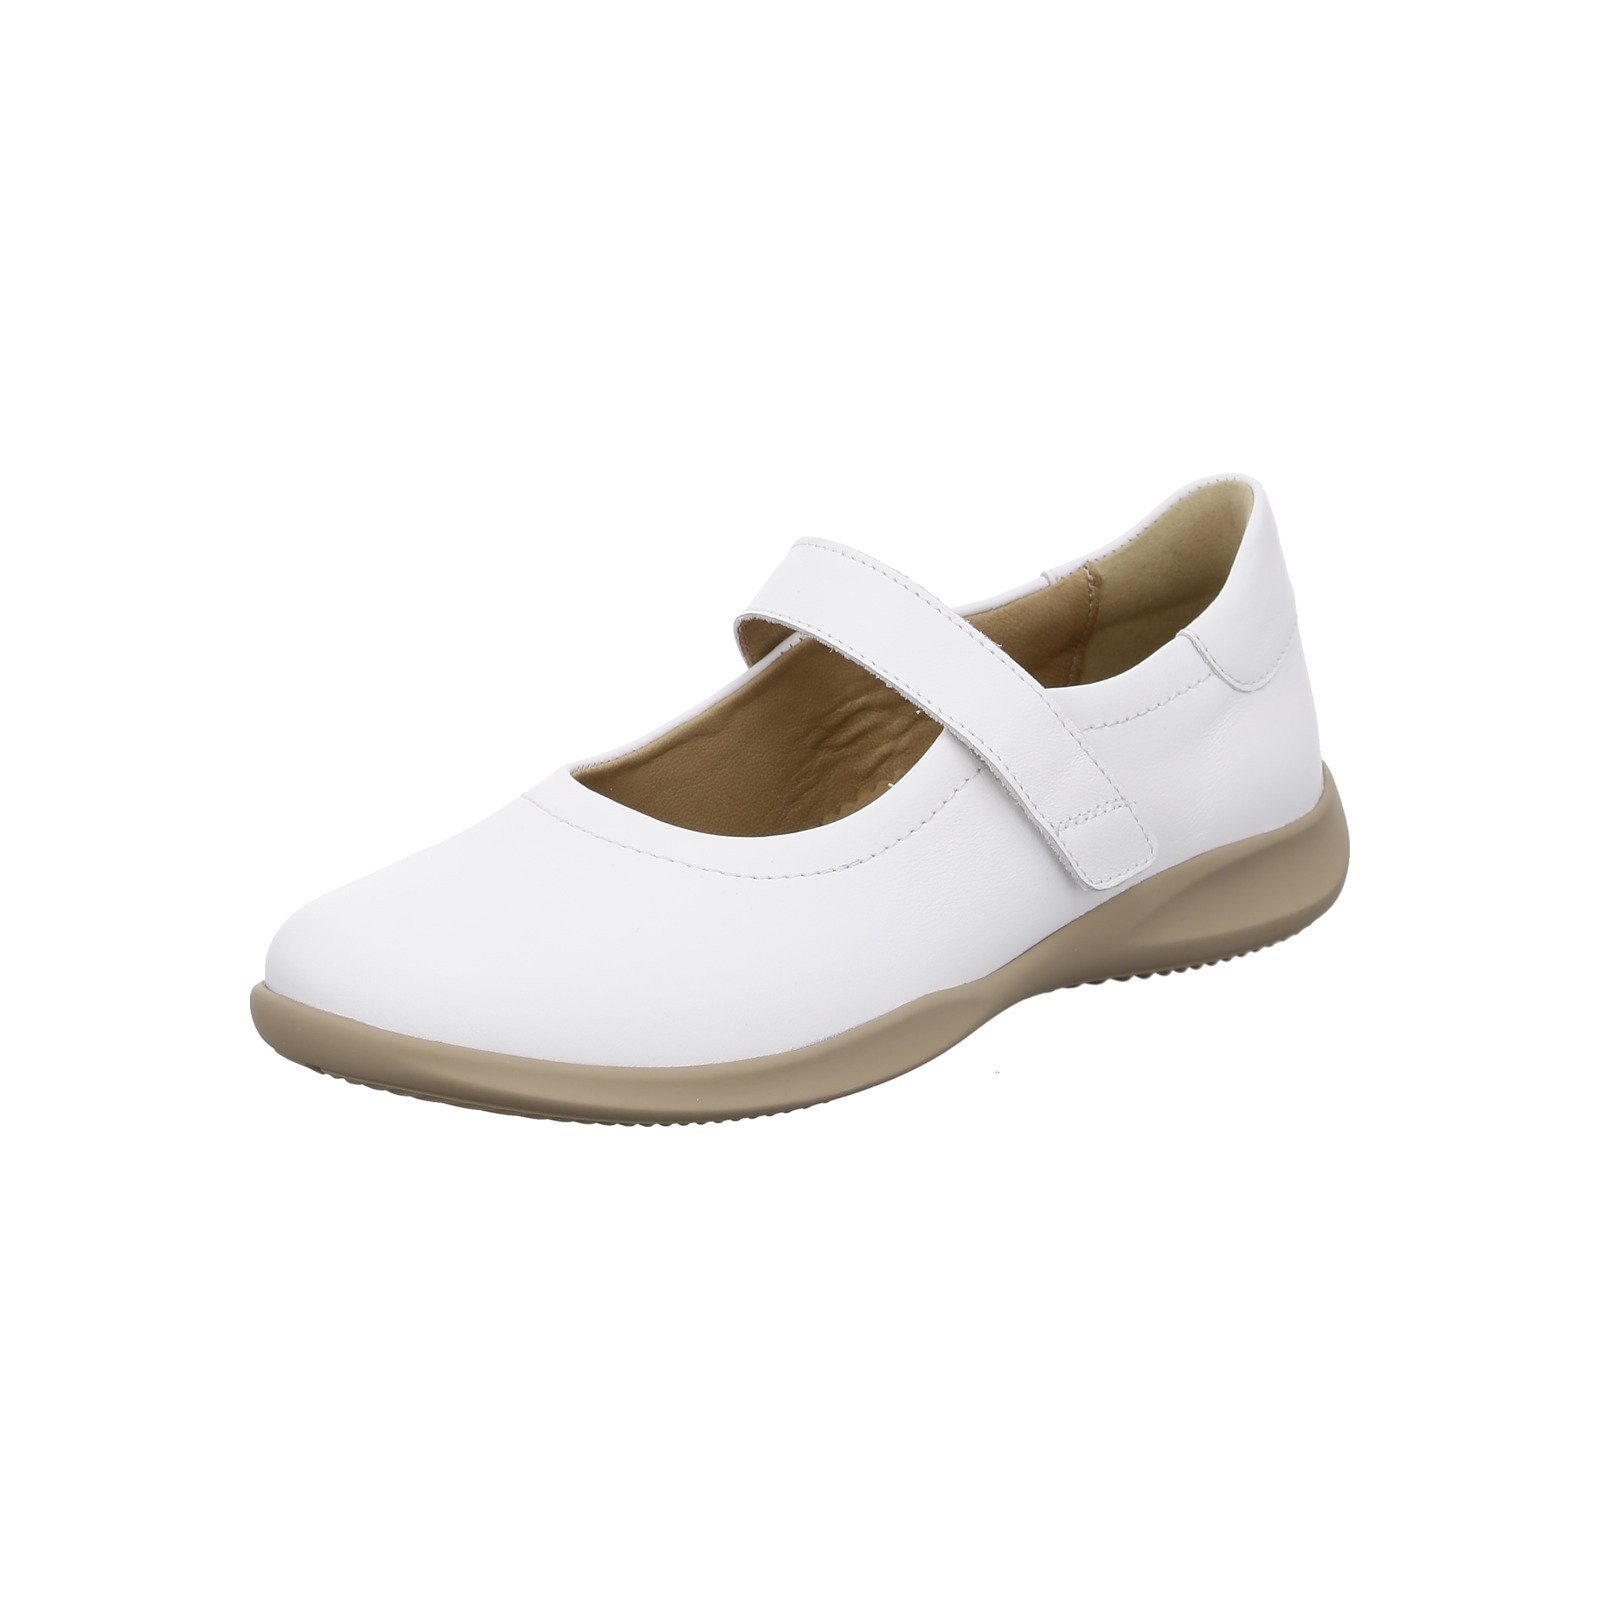 Hartjes Goa - Damen Schuhe Slipper weiß